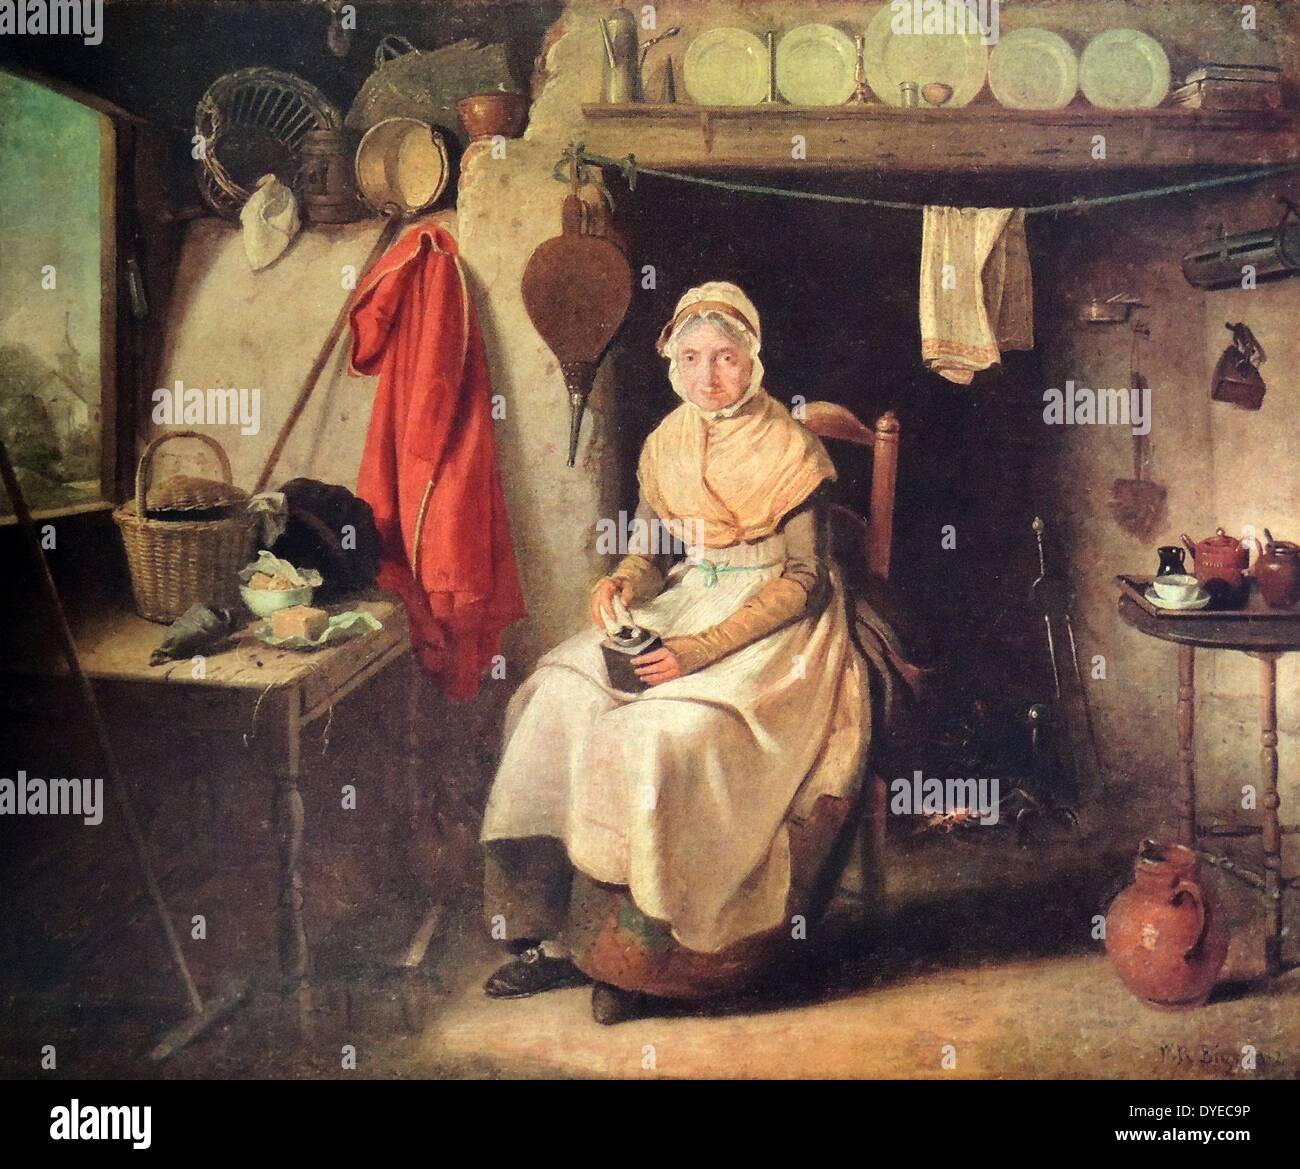 Gîte de l'intérieur, illustre une vieille dame s'assit sur une chaise le polissage l'élément dans ses mains. Par Maritain William Biggs (1755 - 1828) peintre français. Datée 1787 Banque D'Images